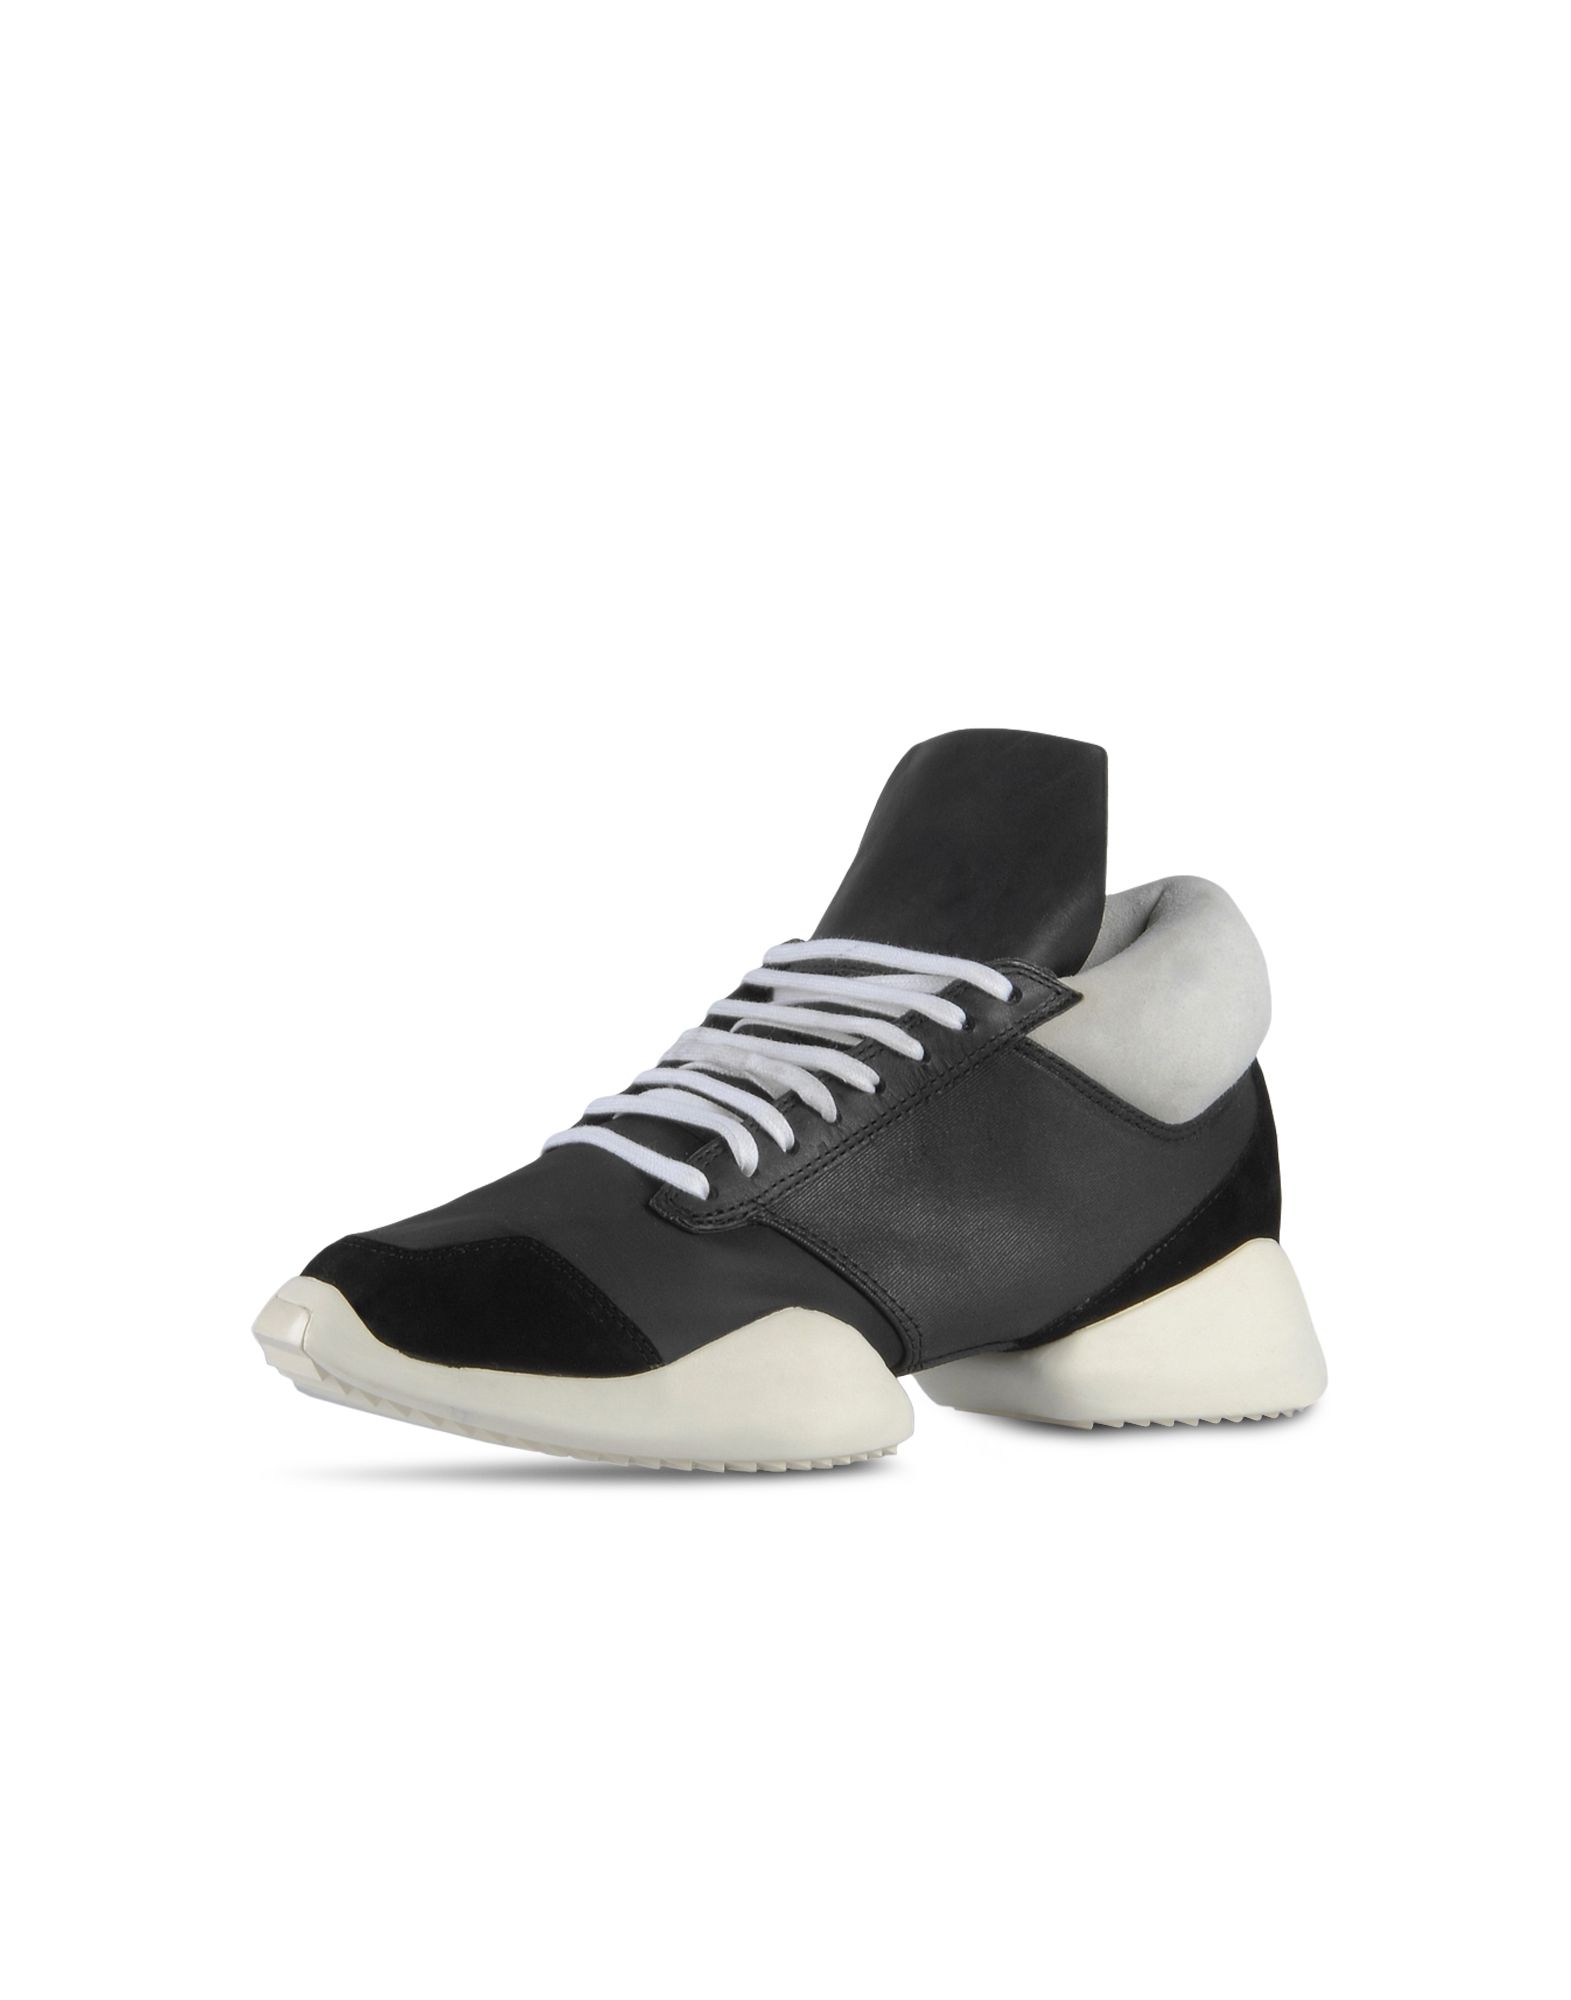 Rick Owens Runner Shoes \u200e \u200eSneakers\u200e \u200e \u200e | Adidas Y-3 Official Site